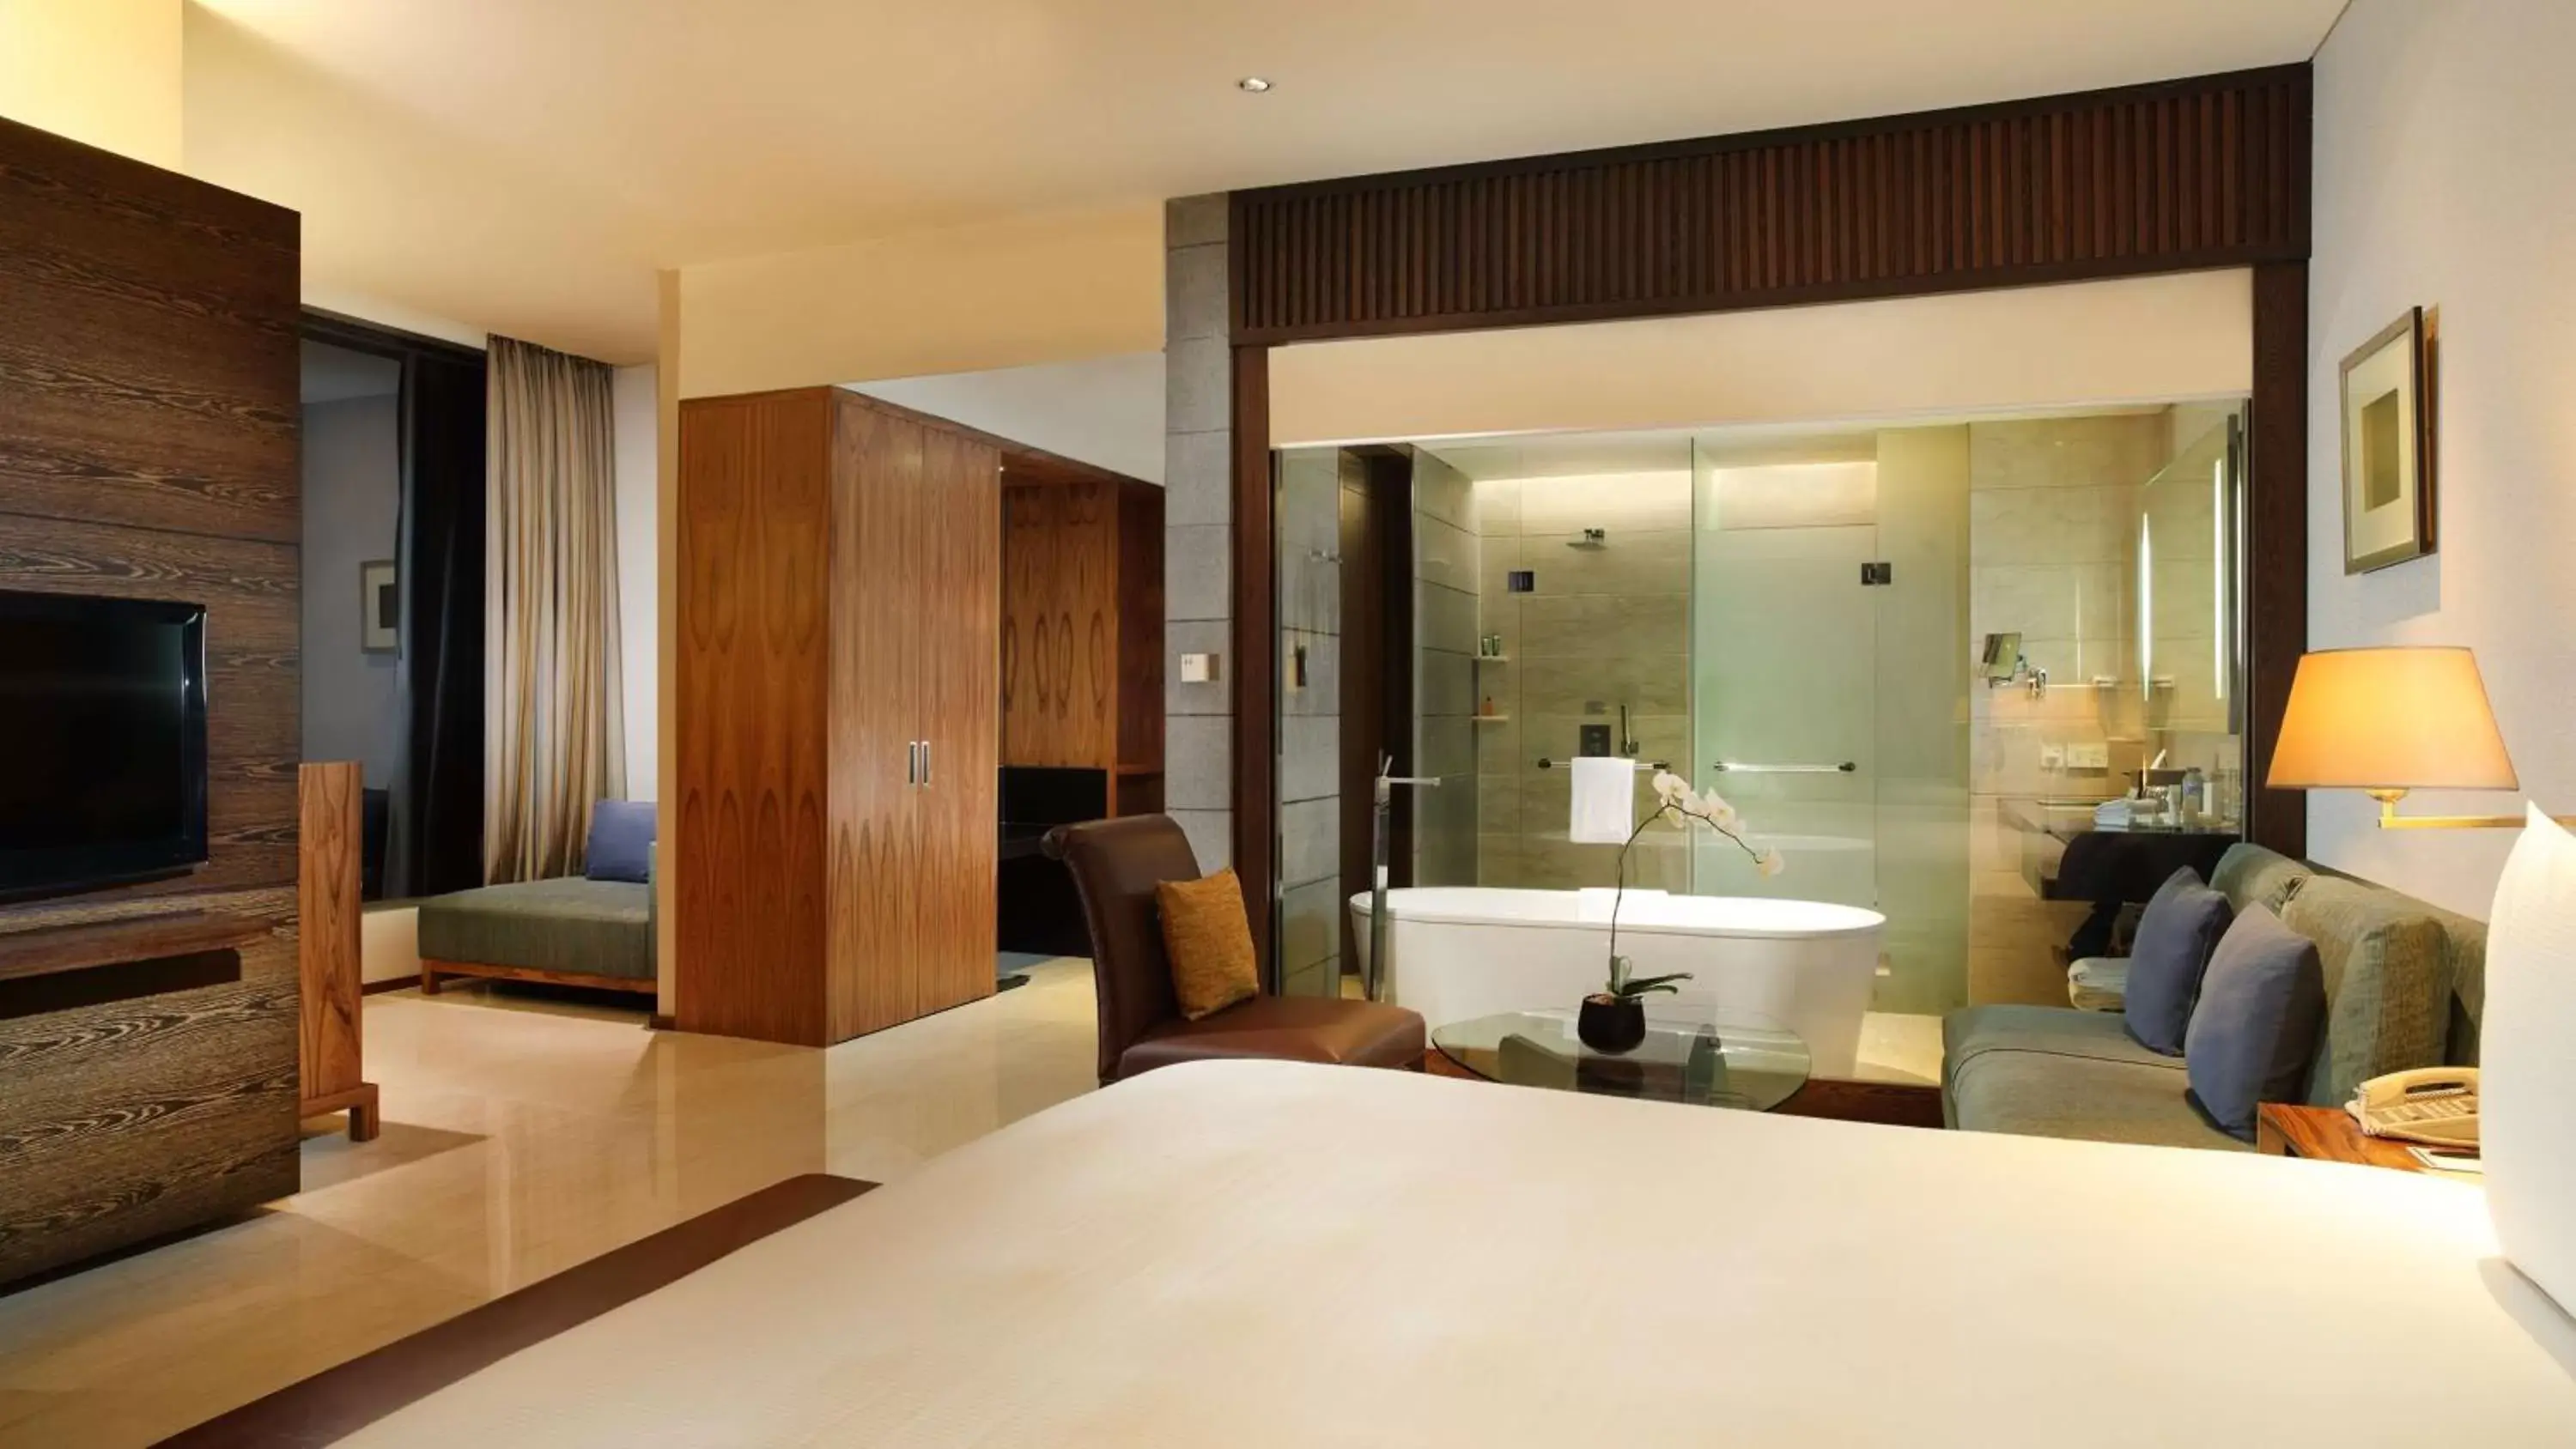 Bathroom in Hilton Bandung